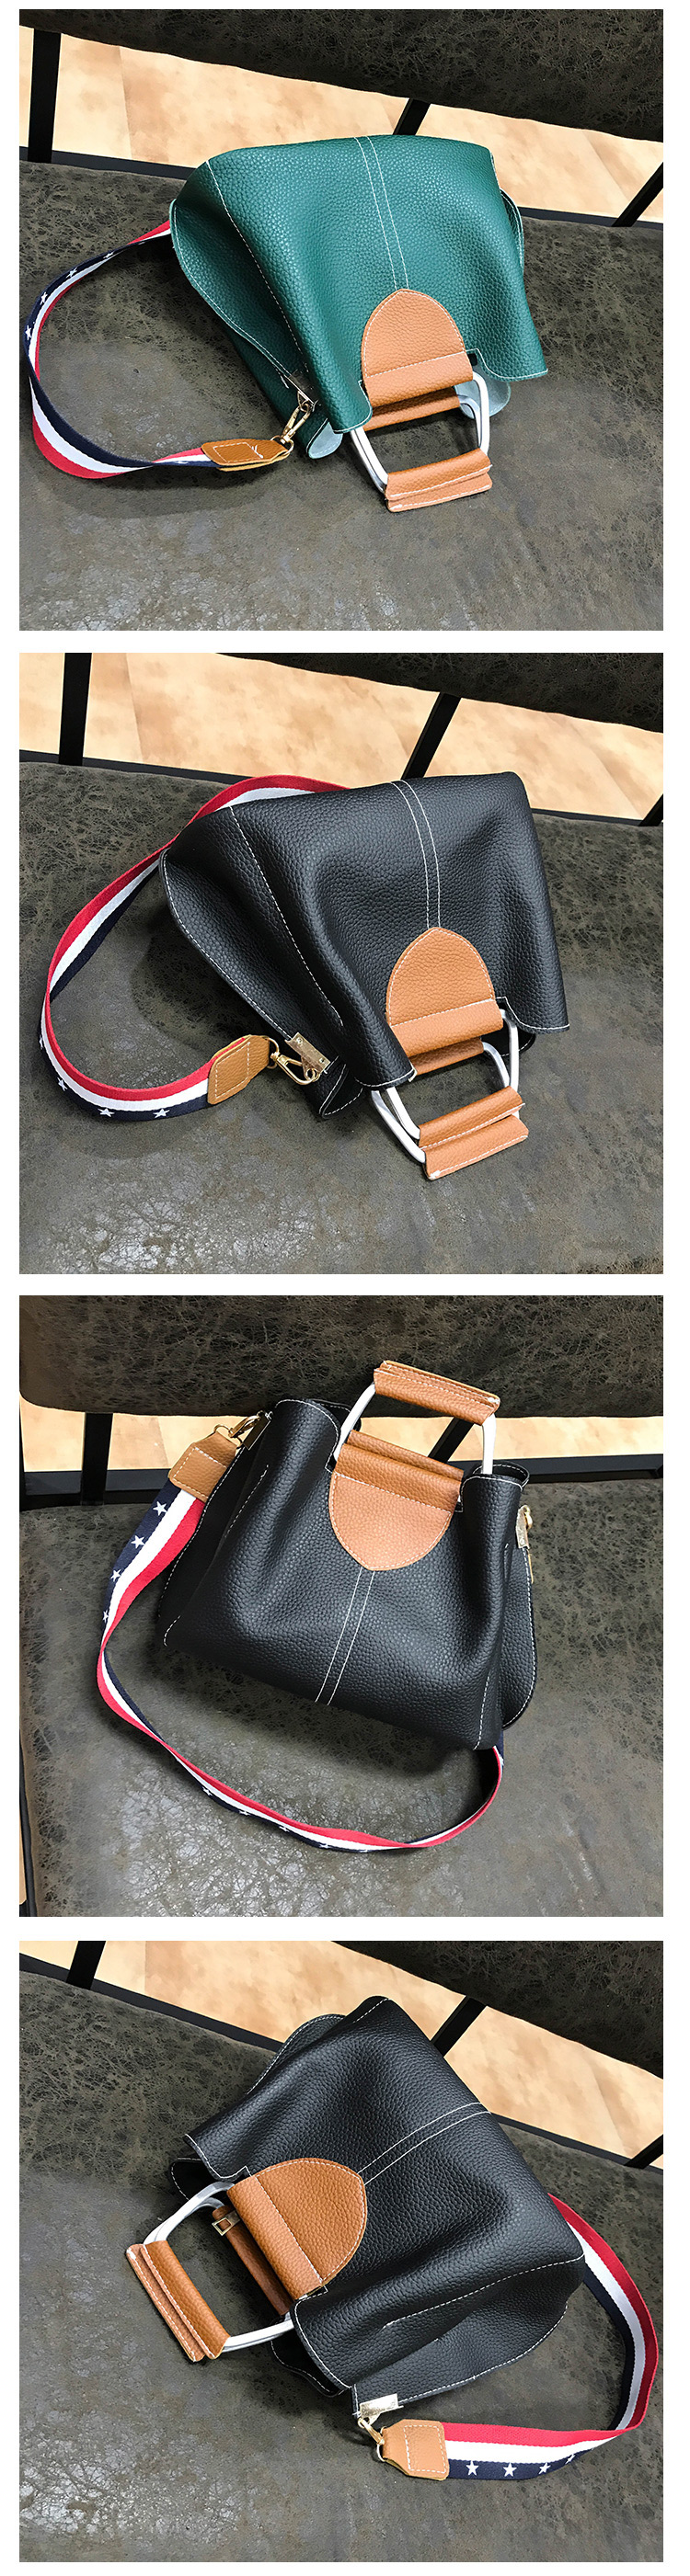 Fashion Black Pure Color Decorated Handbag,Handbags